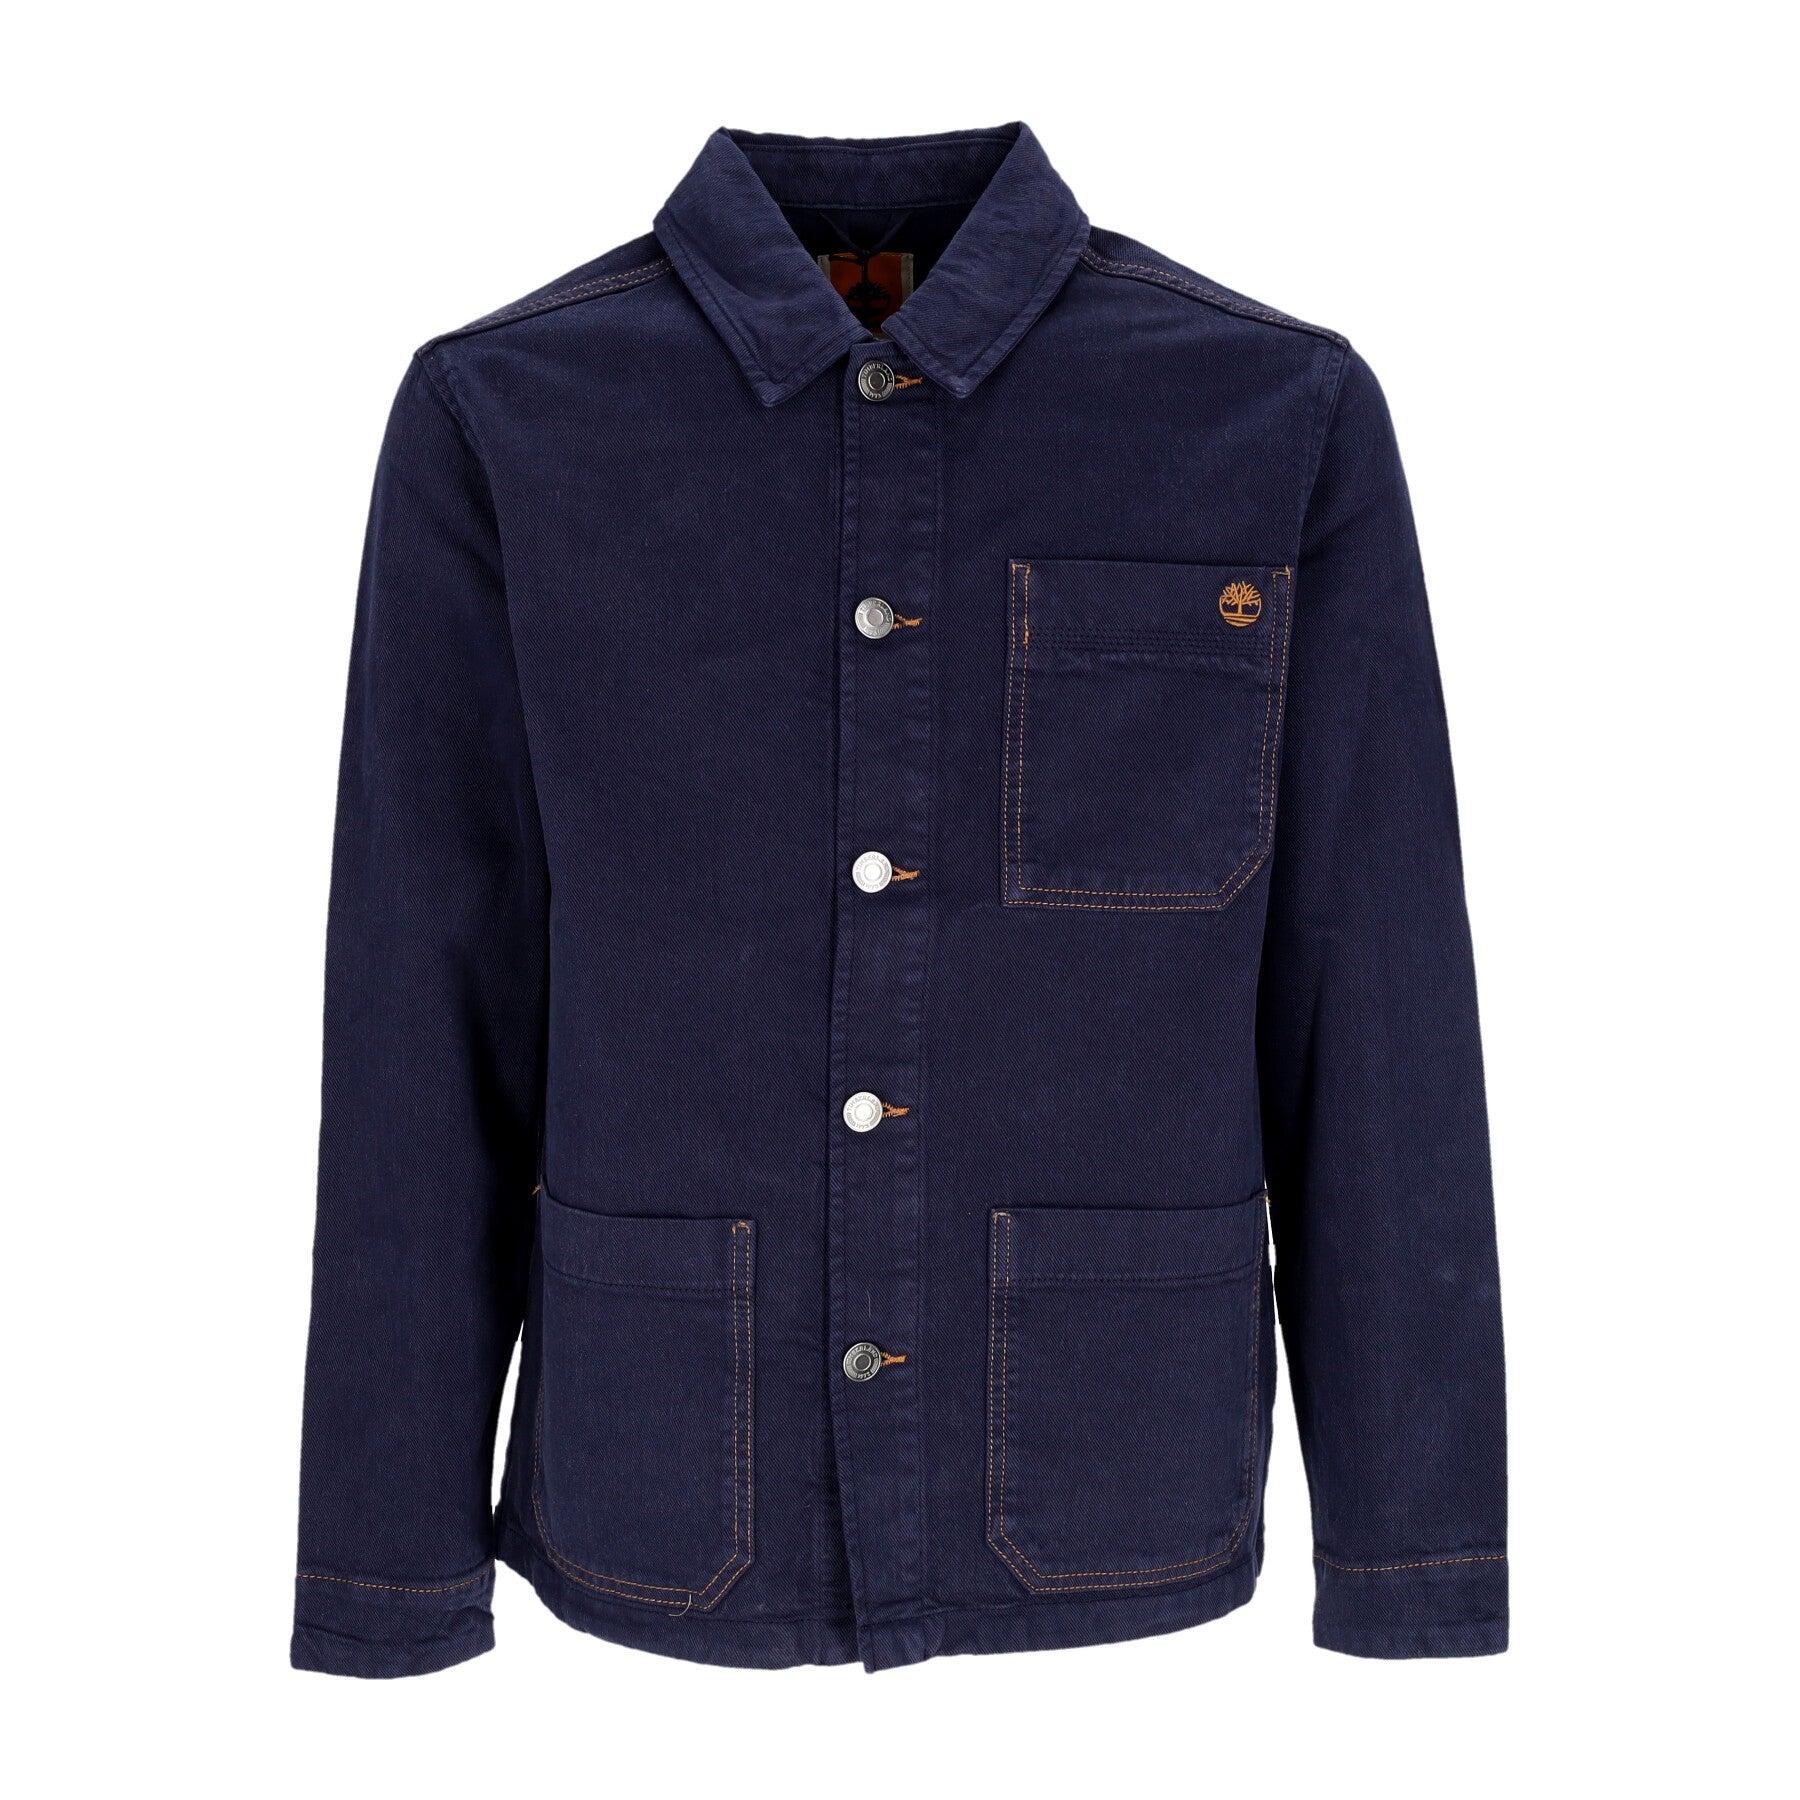 Timberland, Giacca Workwear Uomo Wf Chore Jacket, Indigo Gd